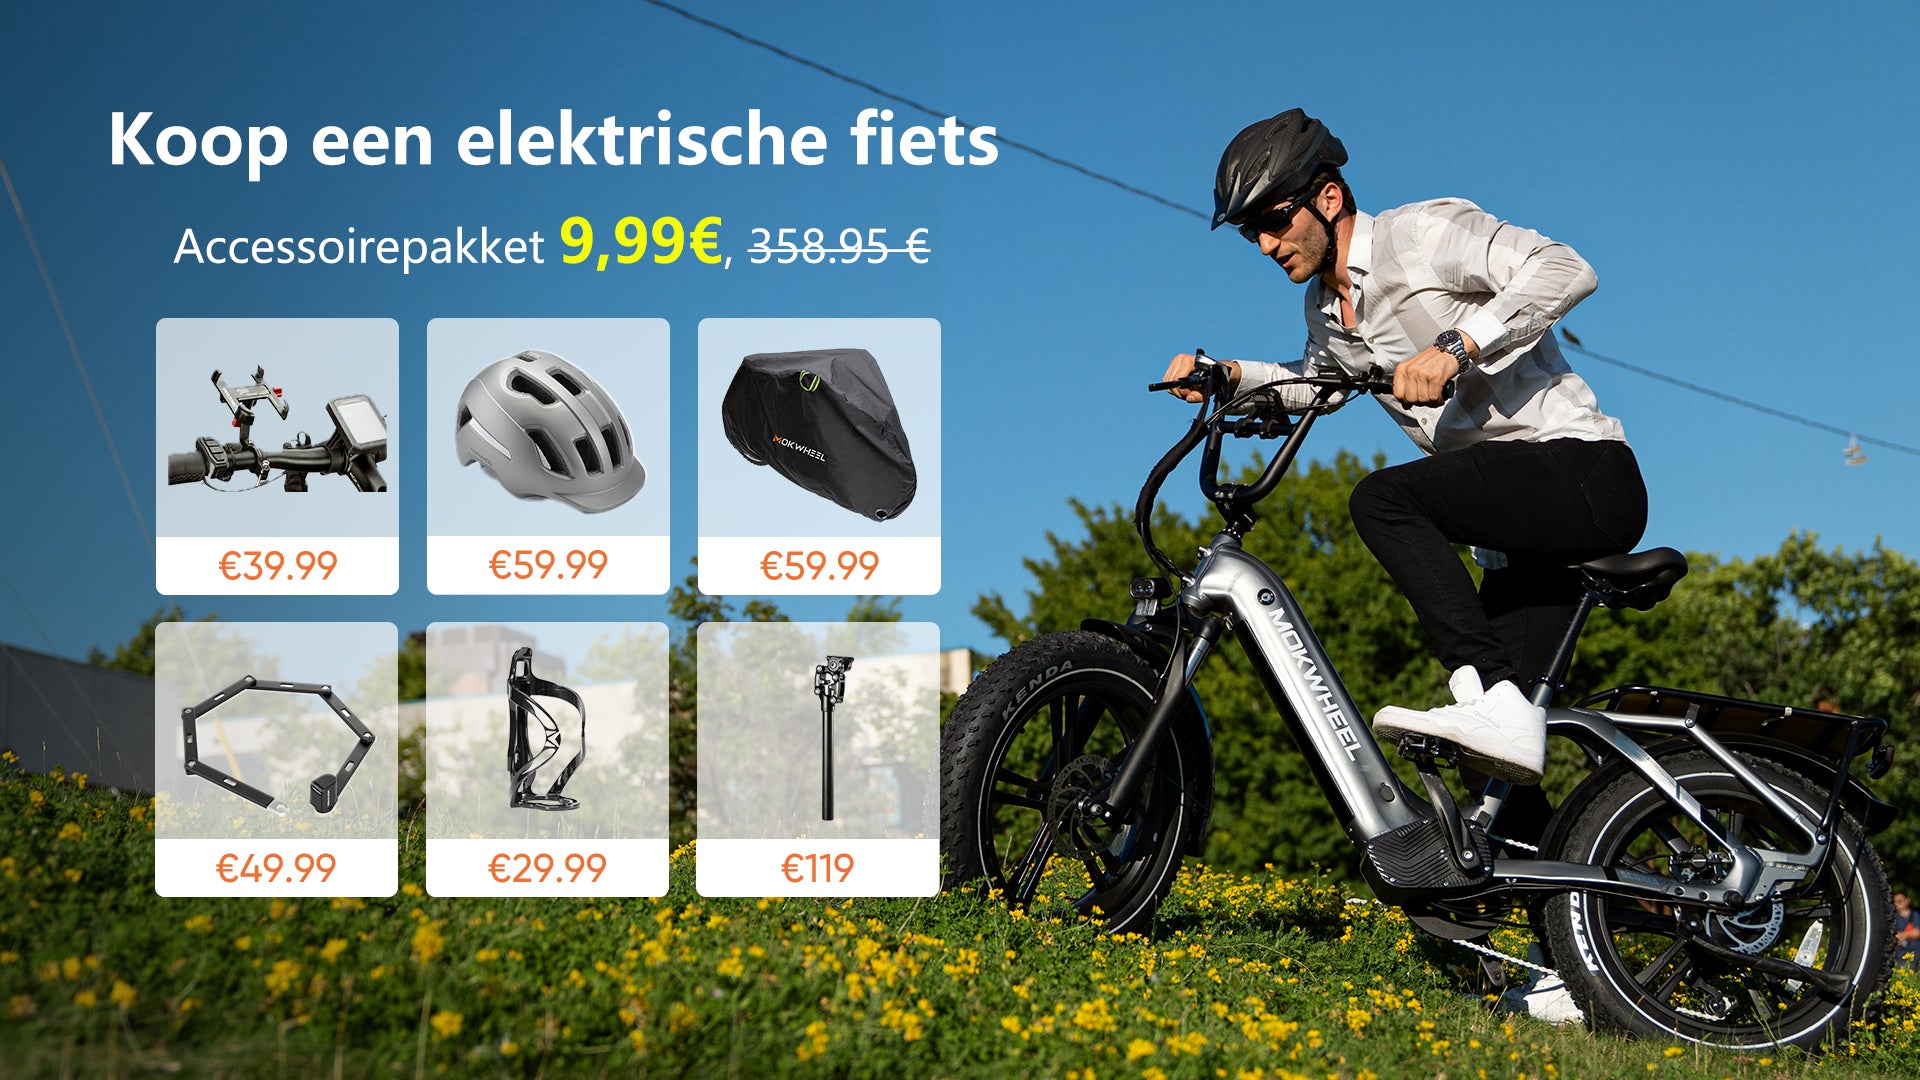 Koop een e-bike